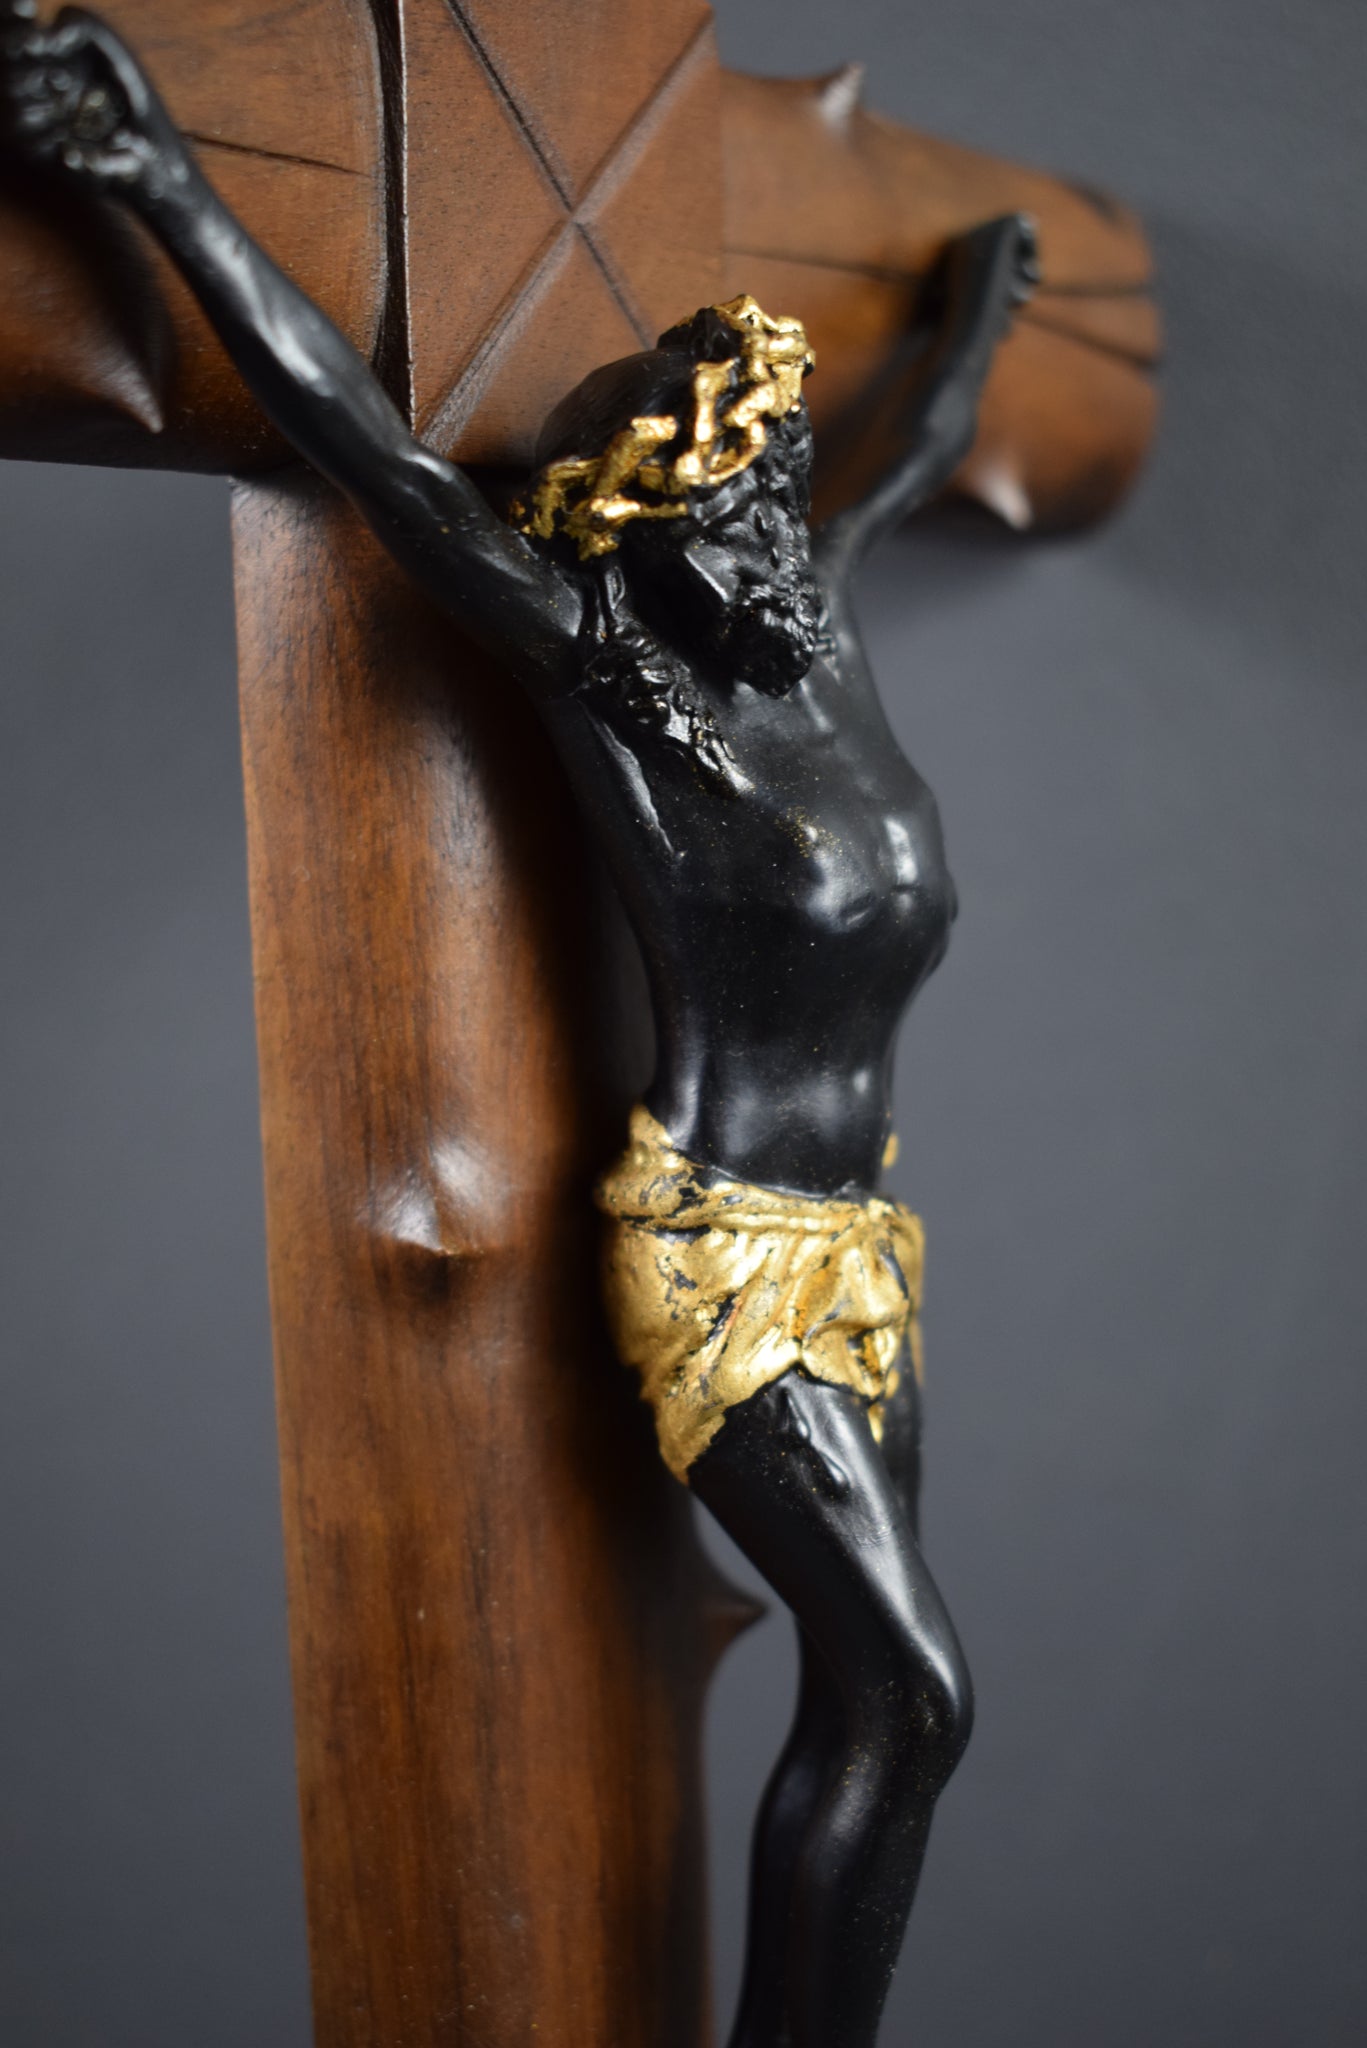 Wood Crucifix 19th